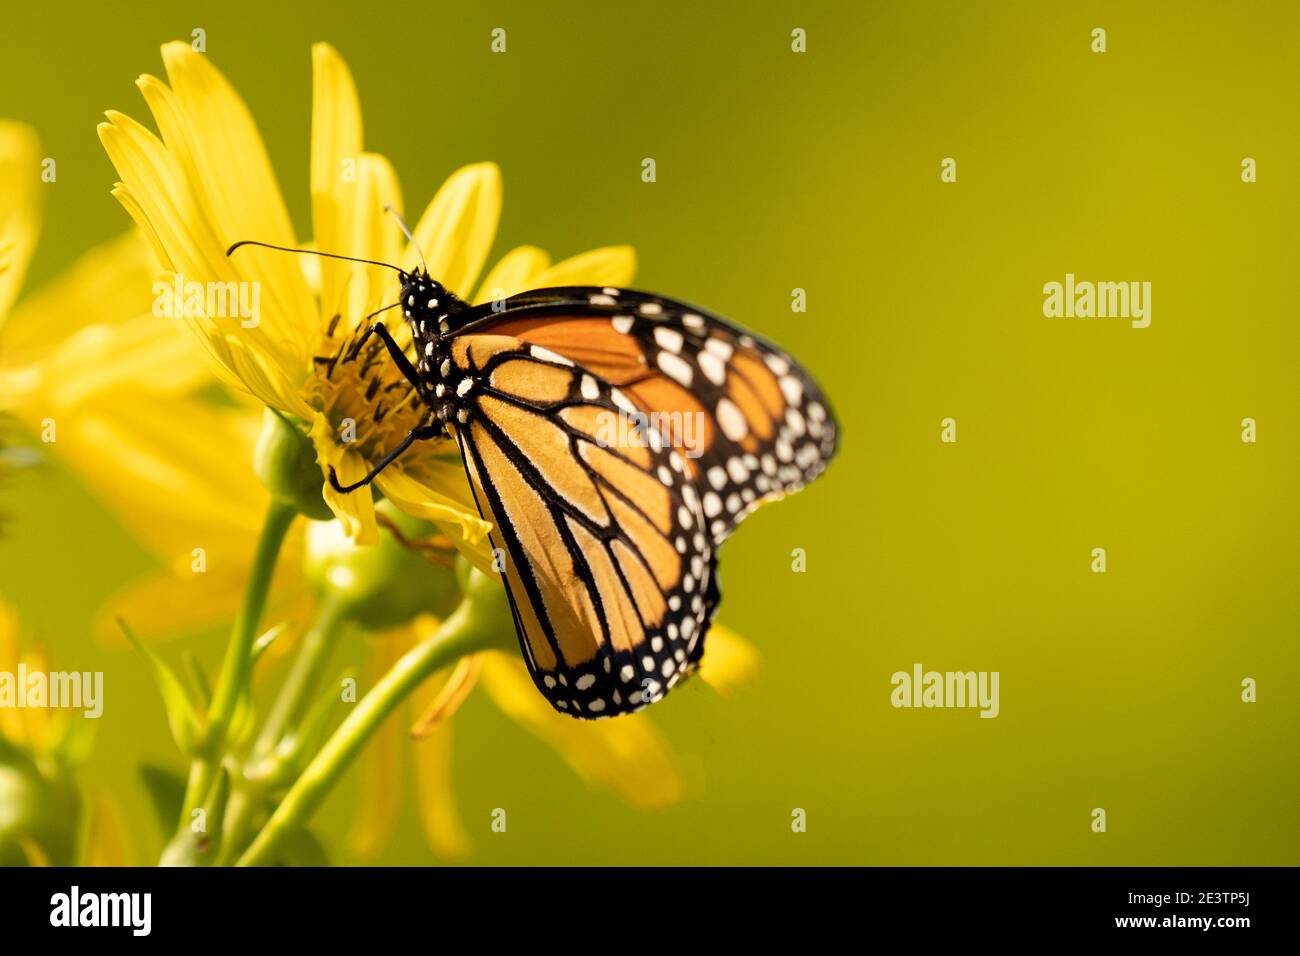 Monarchschmetterling (Danaus plexippus) ernährt sich von der gelben Blume. Monarch Schmetterling Population rückt näher an Aussterben Stockfoto